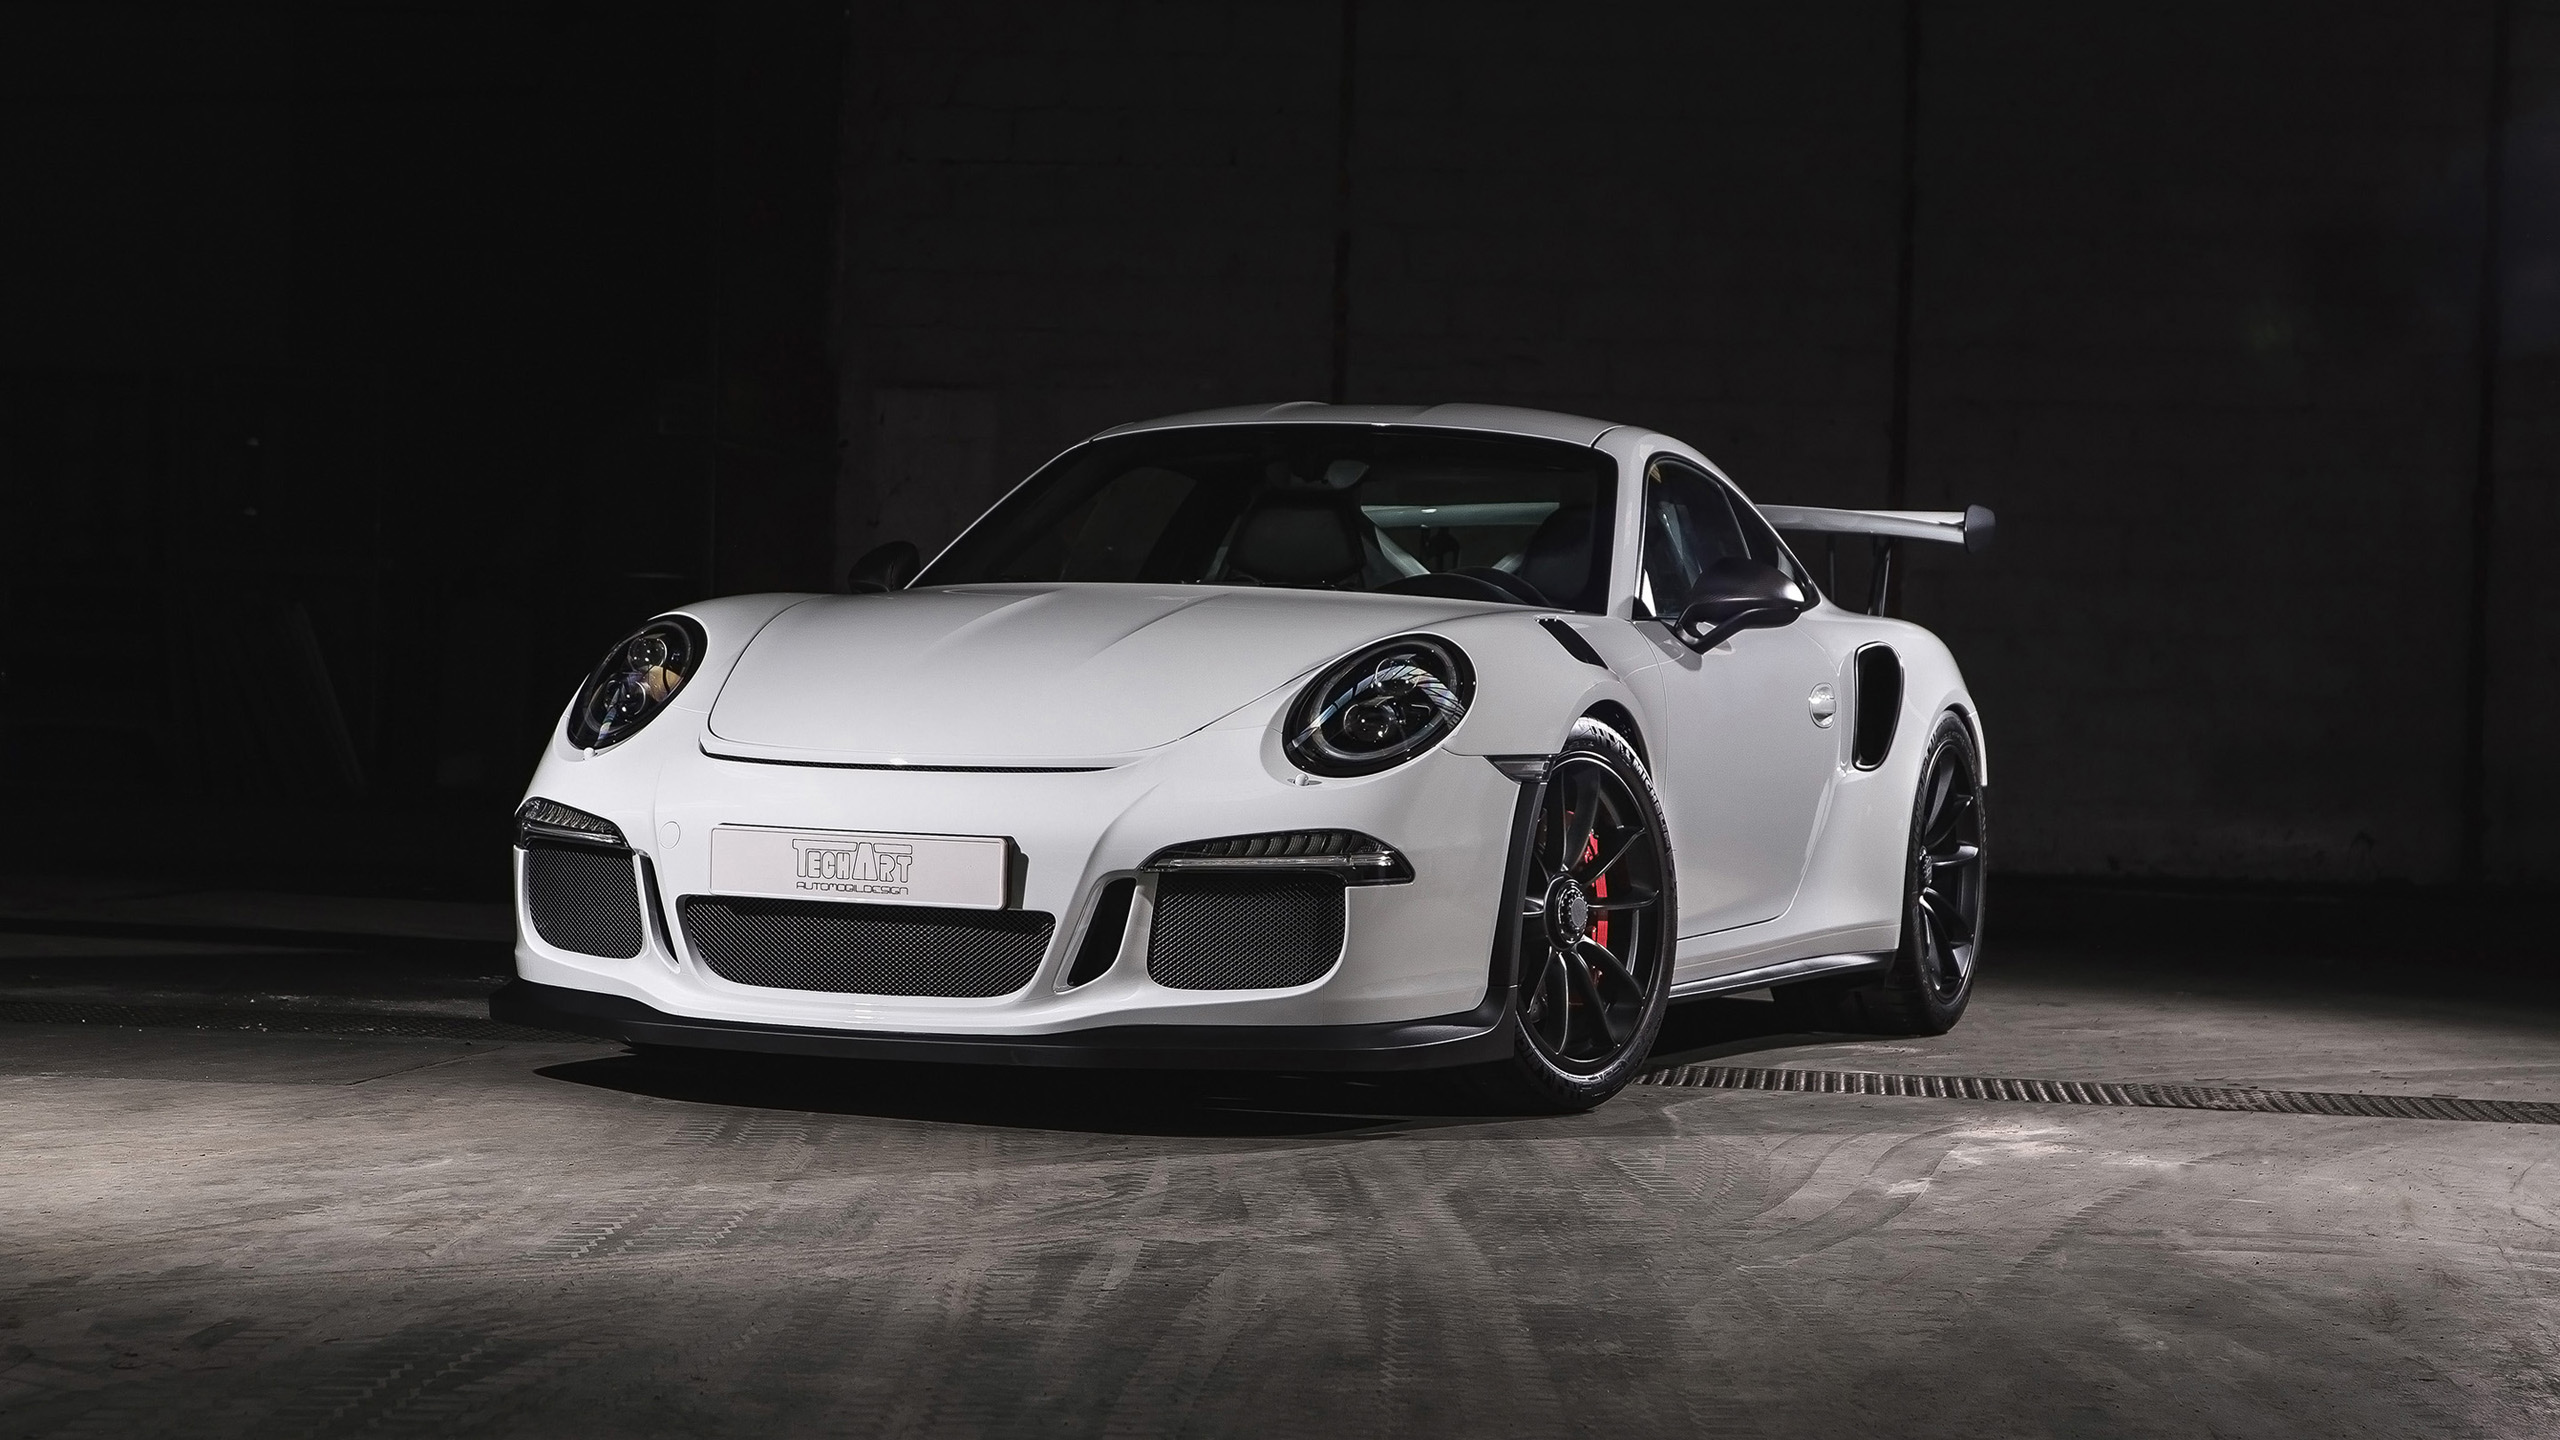 2016 TechArt Porsche 911 GT3 RS Carbon Sport Wallpaper | HD Car Wallpapers | ID #6600